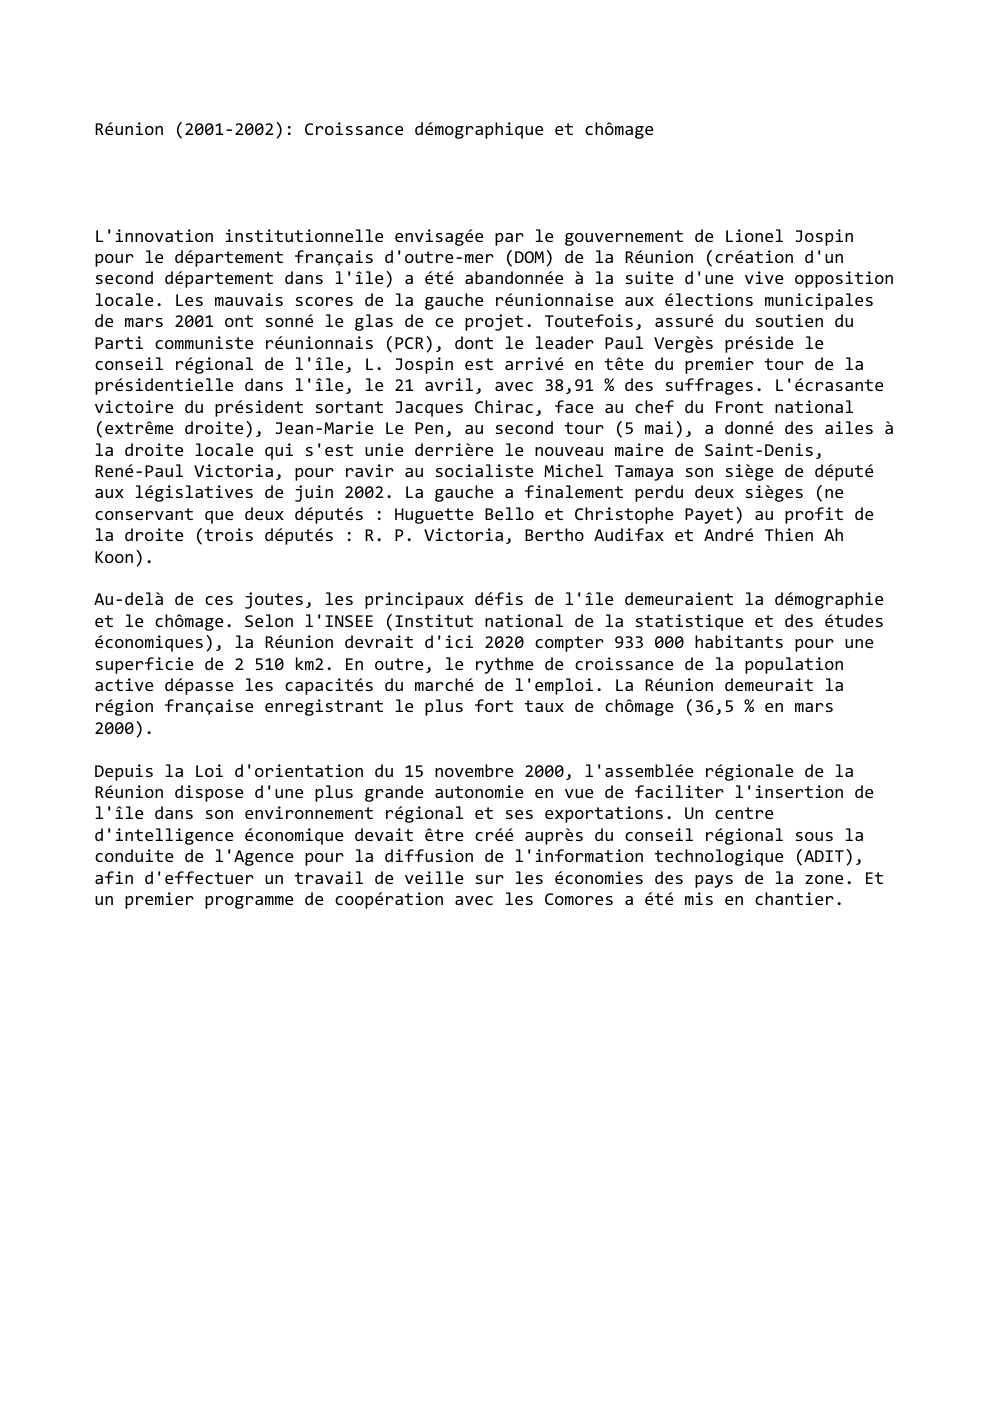 Prévisualisation du document Réunion (2001-2002): Croissance démographique et chômage

L'innovation institutionnelle envisagée par le gouvernement de Lionel Jospin
pour le département français d'outre-mer...